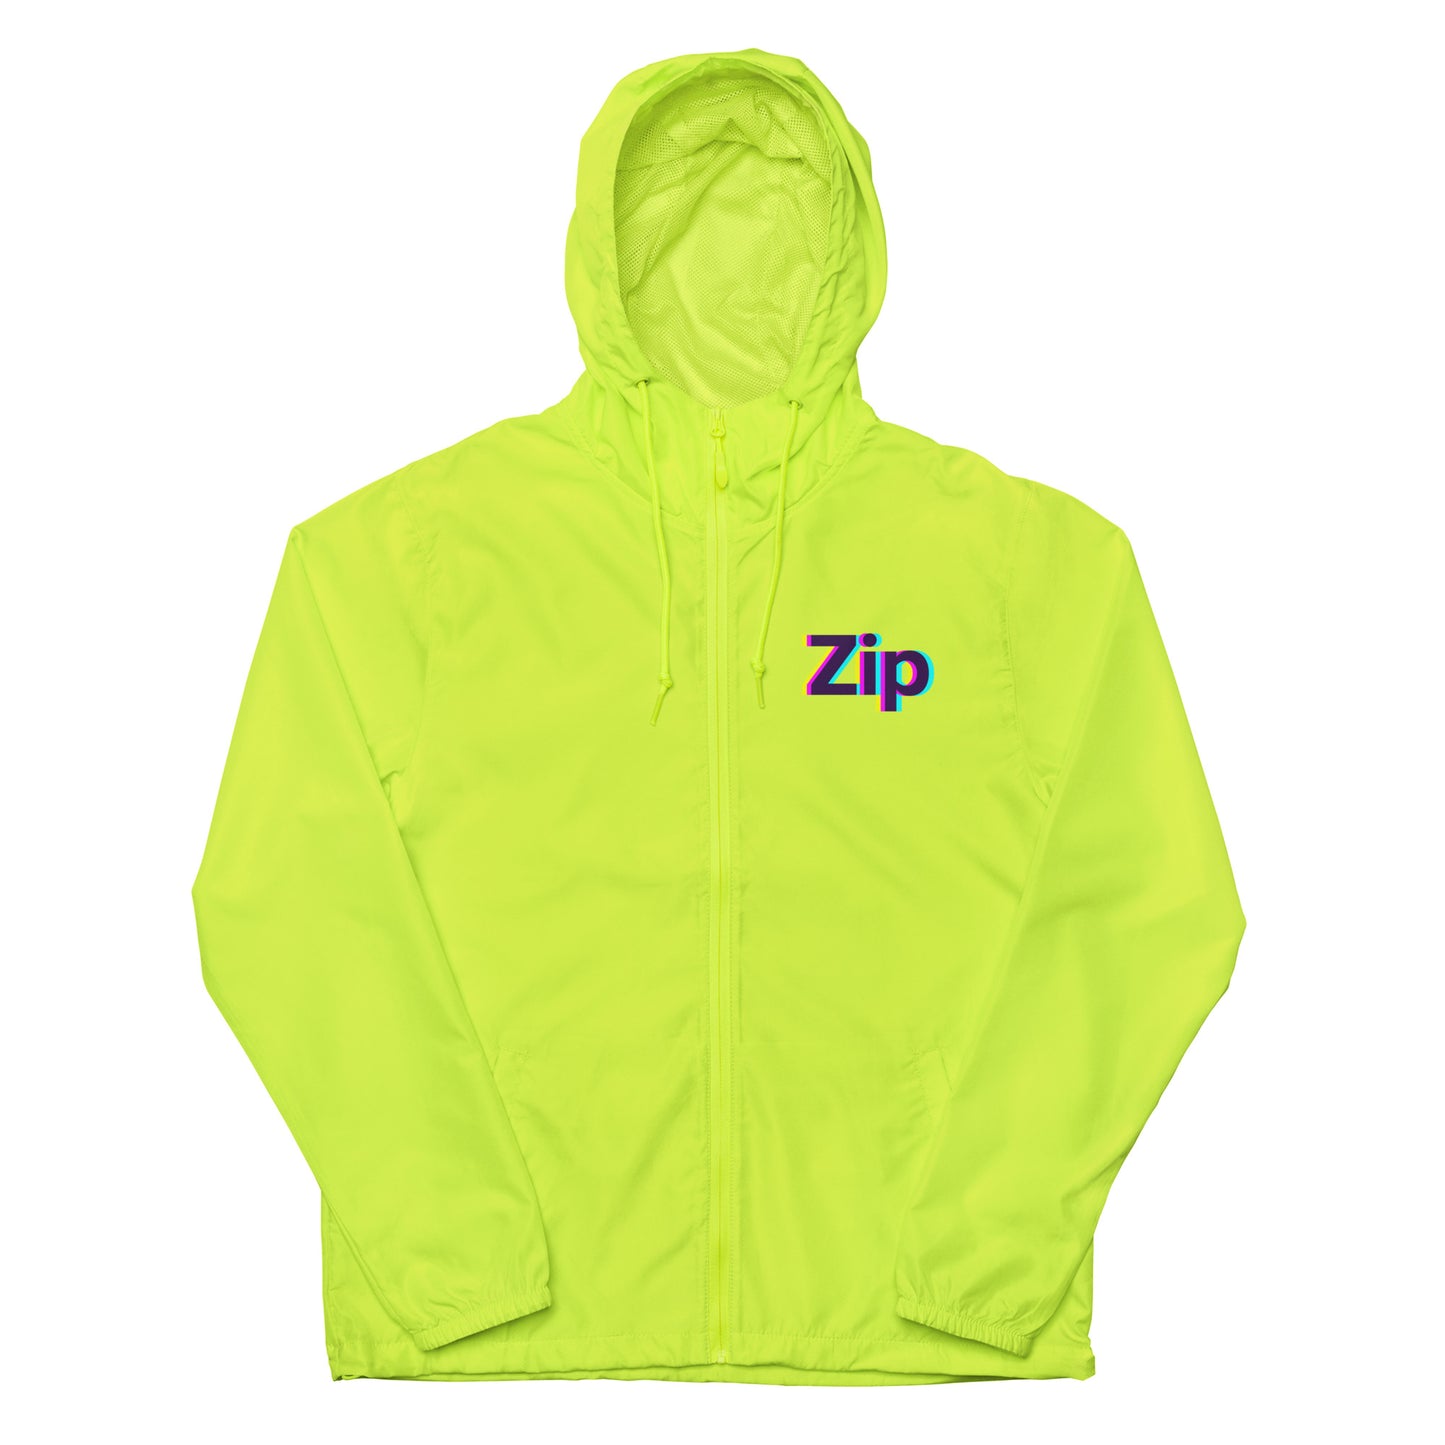 ZipSlim 90's lightweight zip up windbreaker